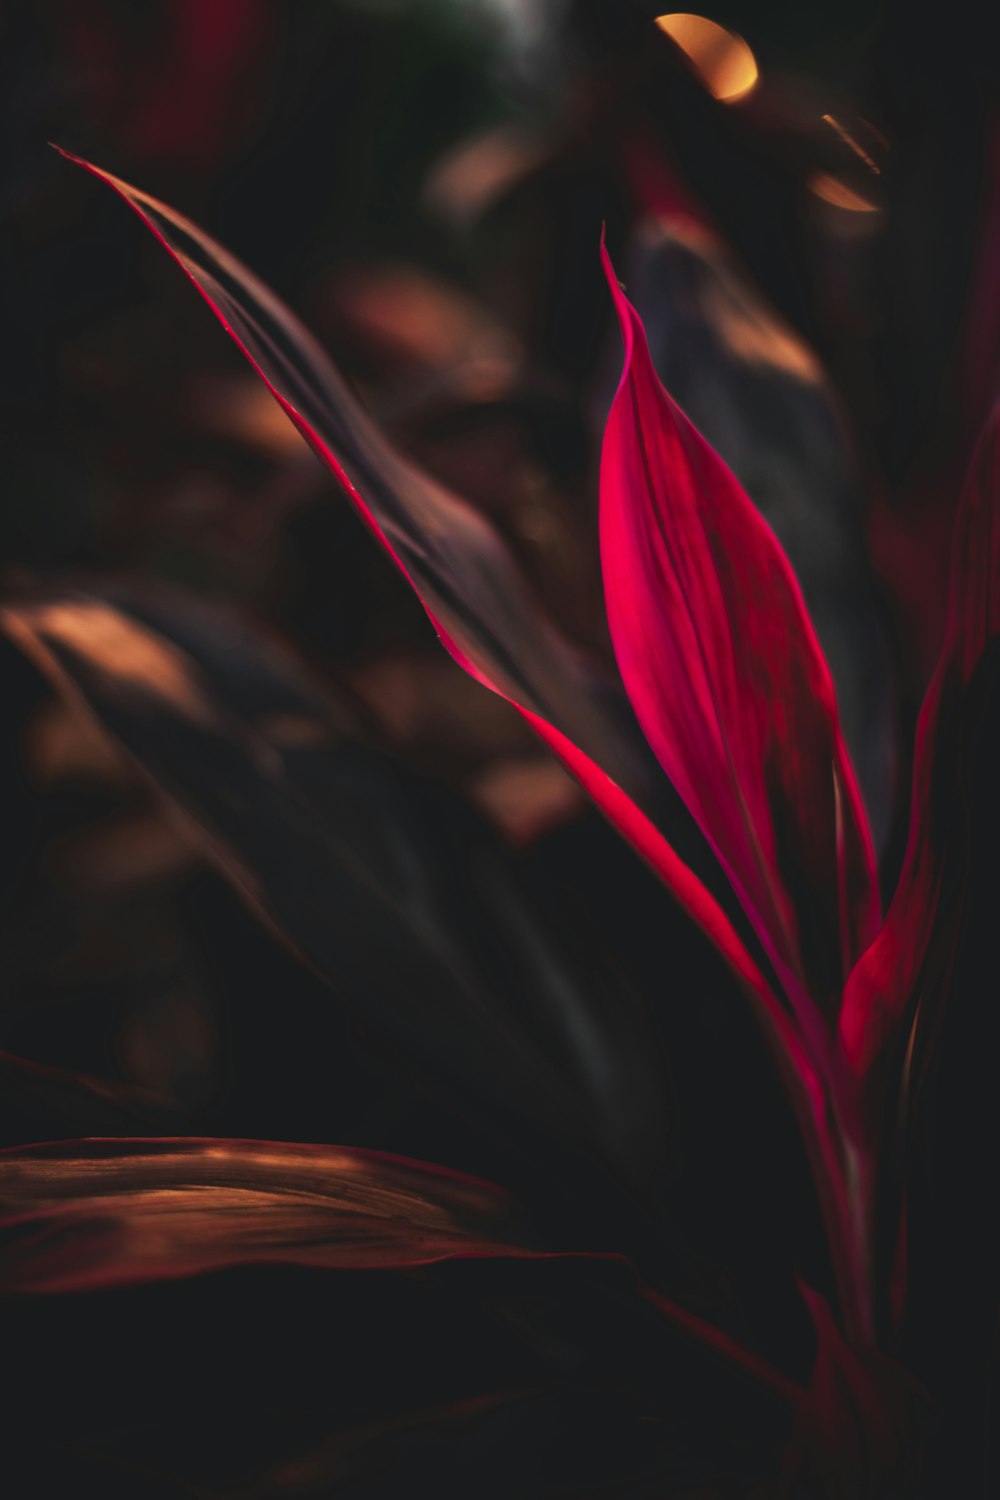 fleur rouge en gros plan photographie